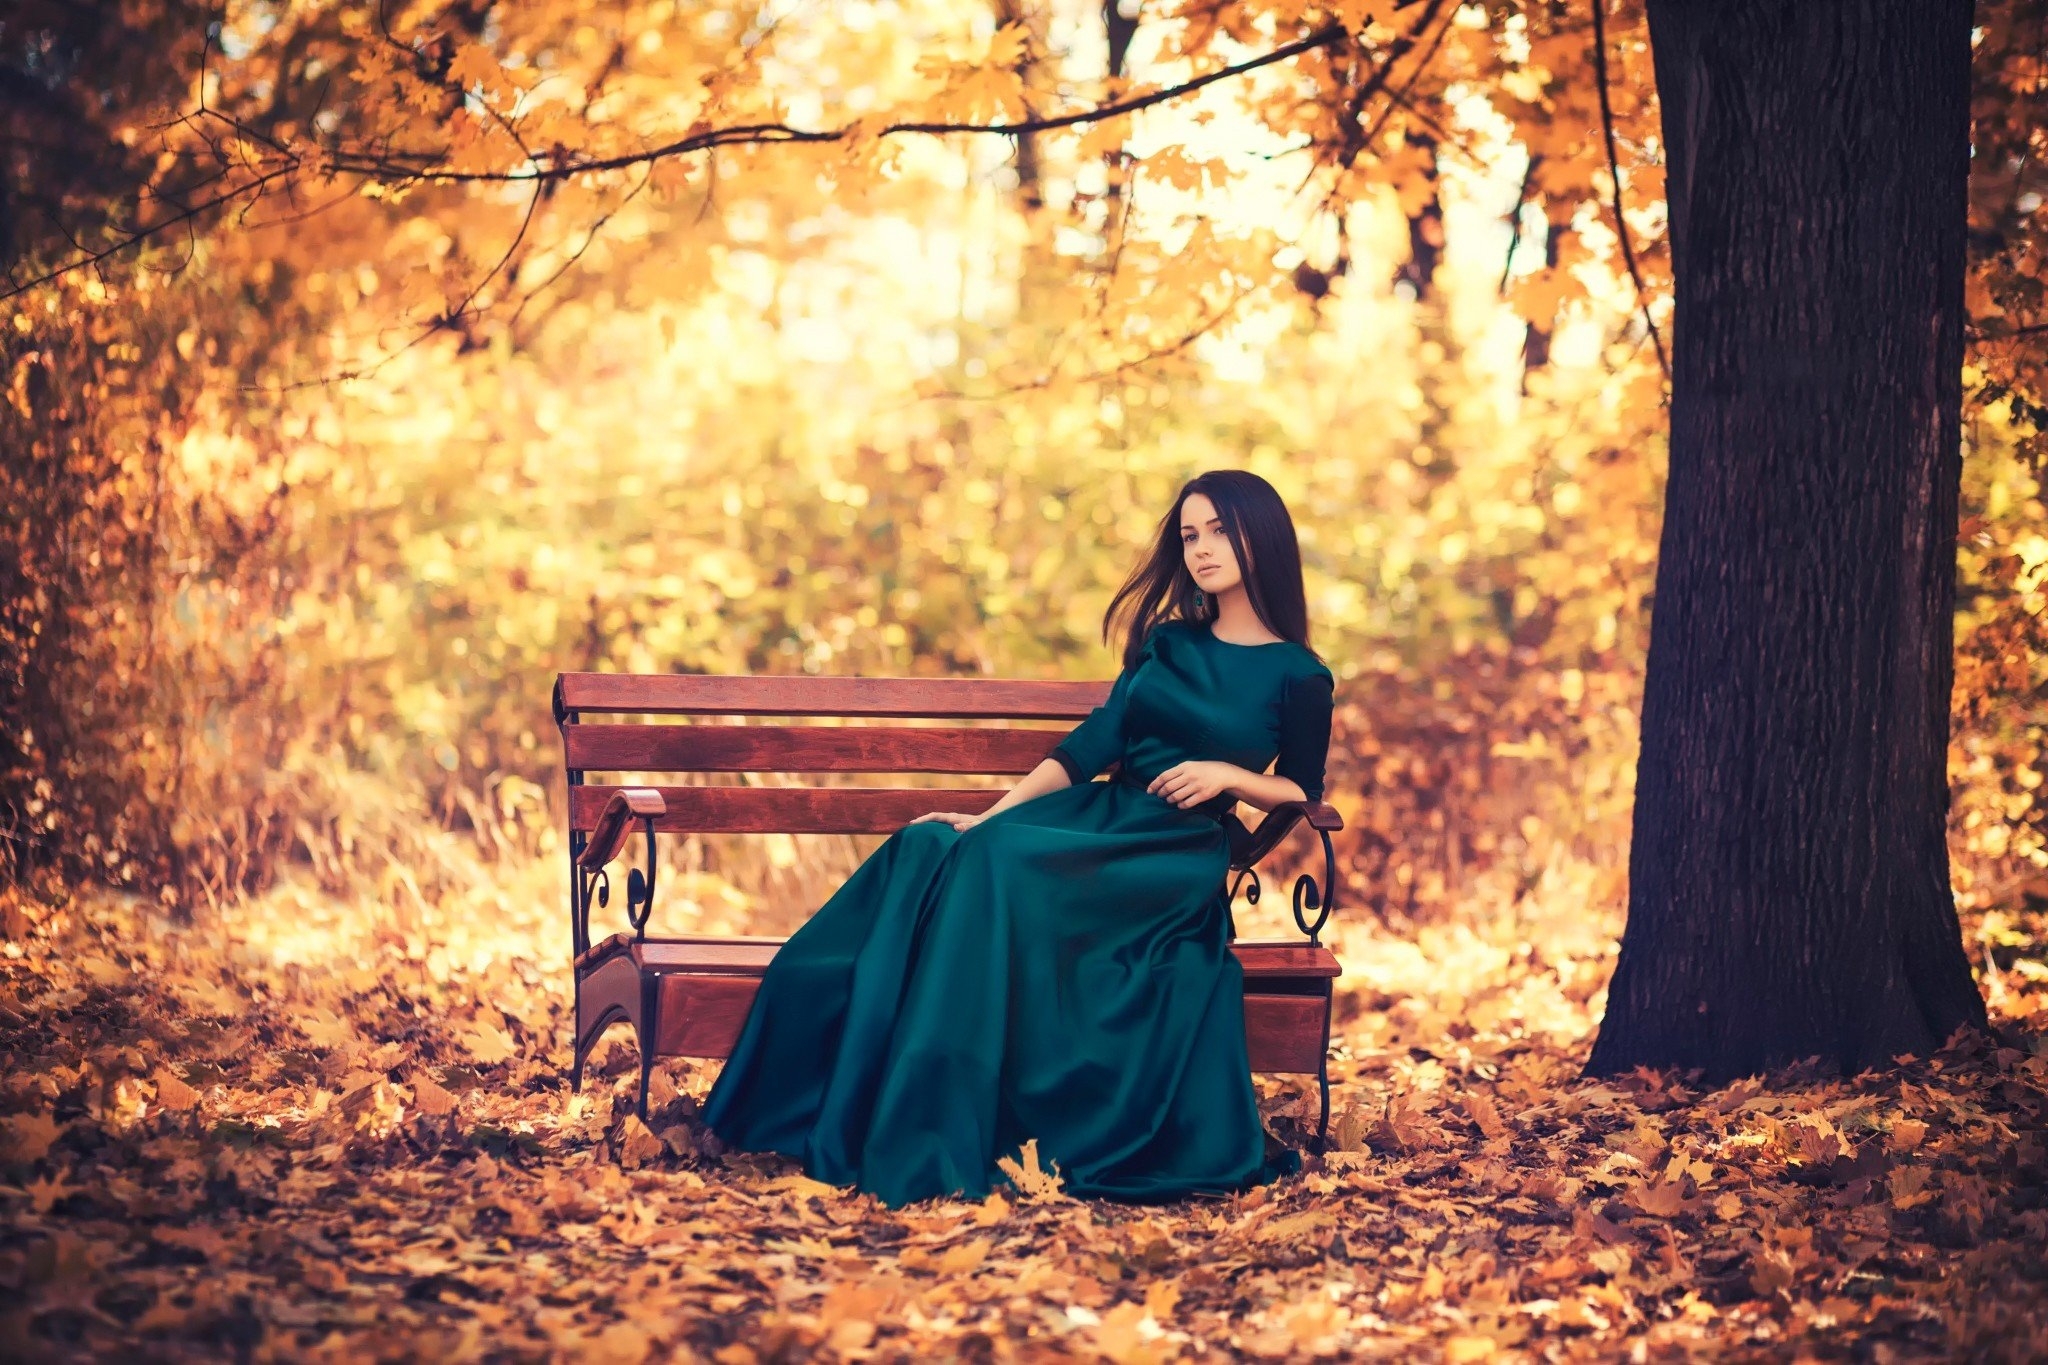 Картинка: Девушка, брюнетка, платье, осень, листья, дерево, парк, скамейка, сидит